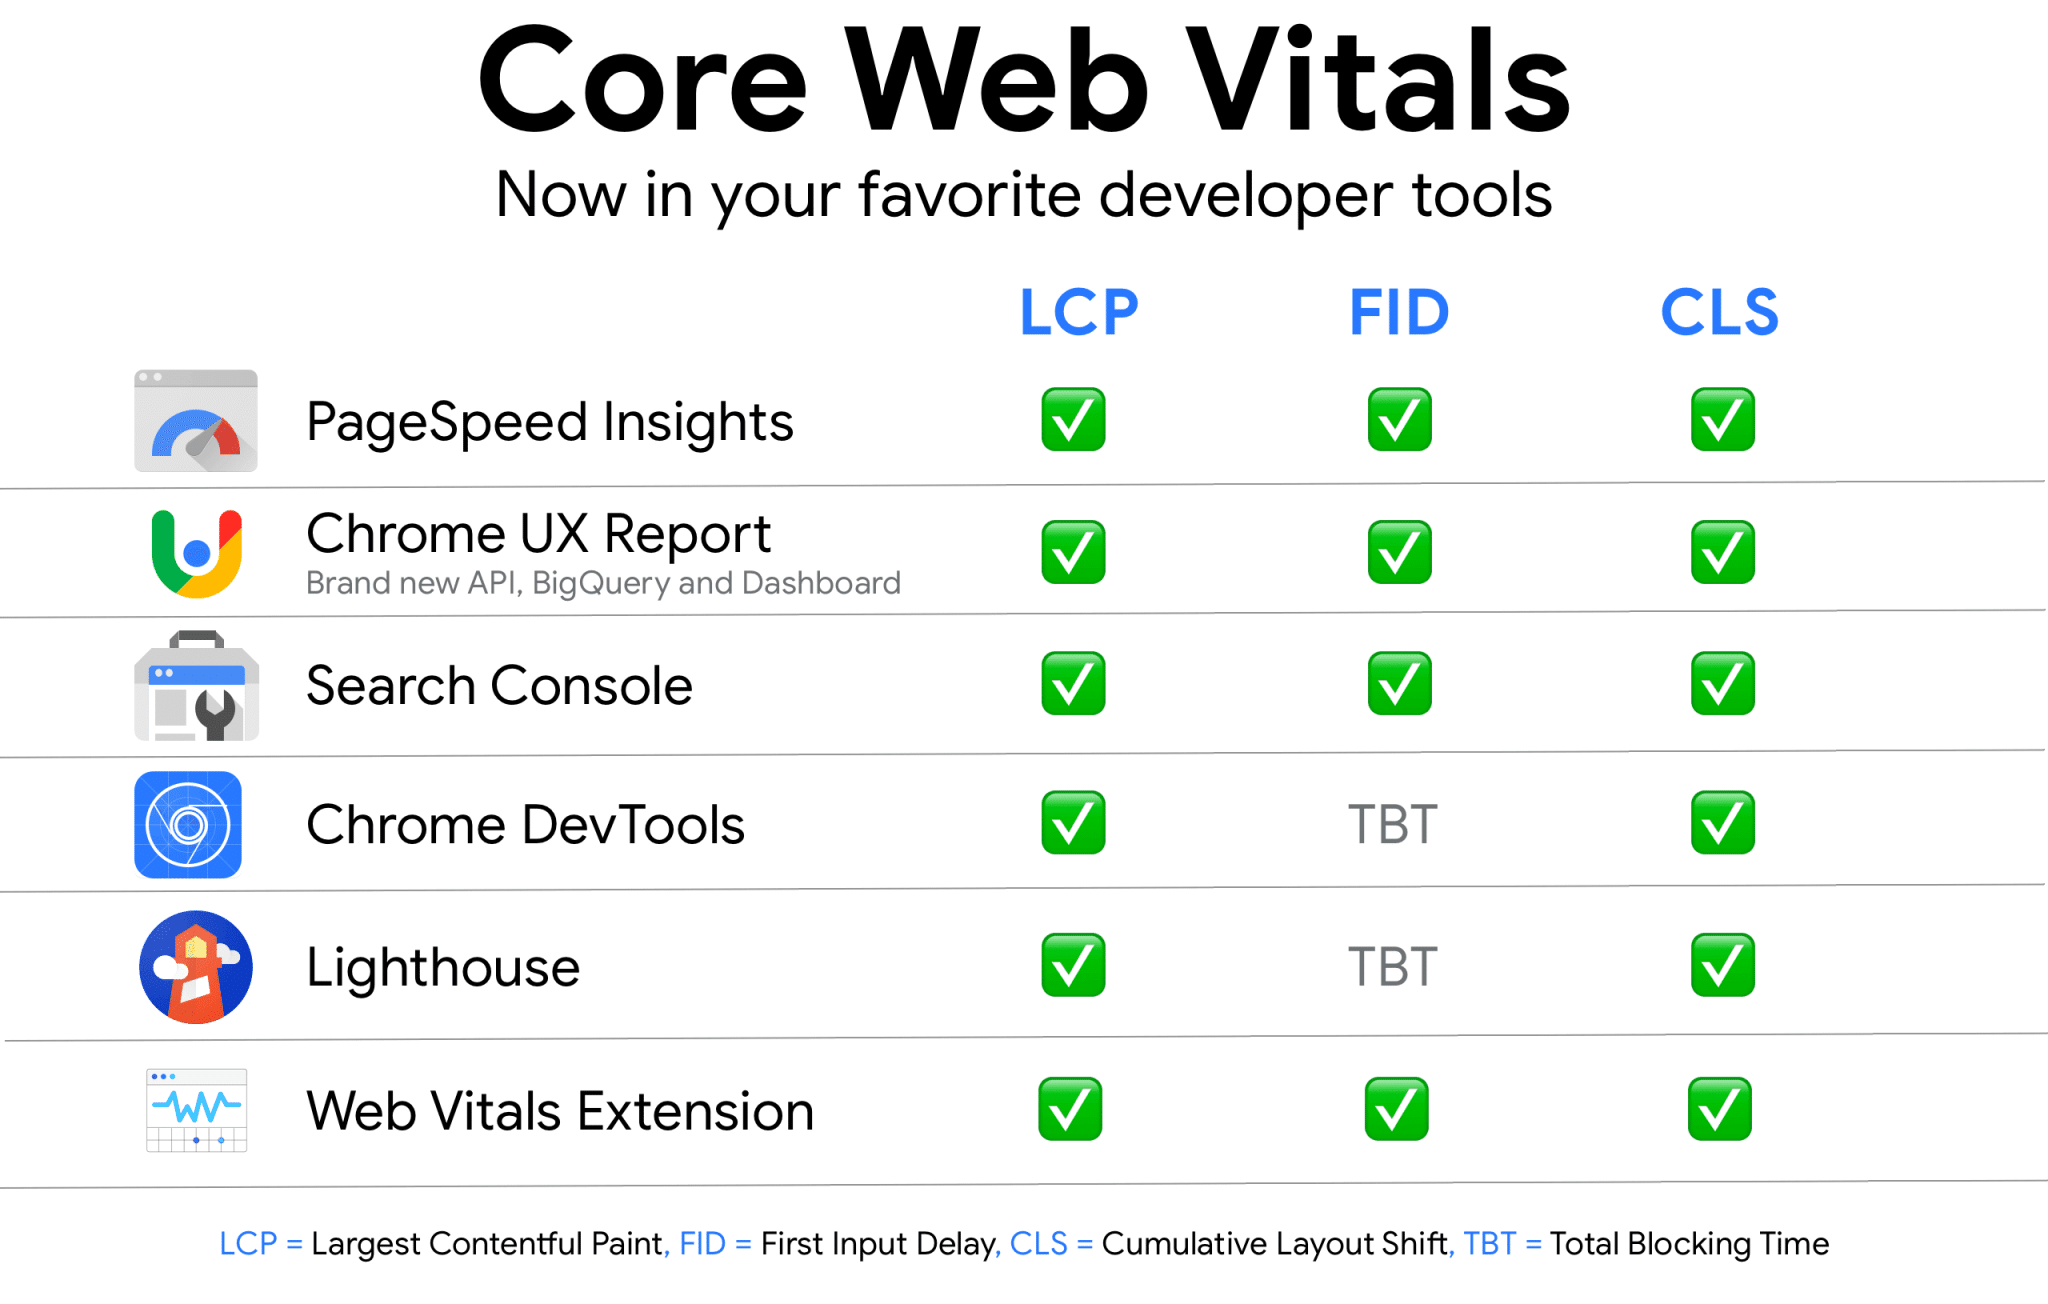 Google’s tools to measure Core Web Vitals